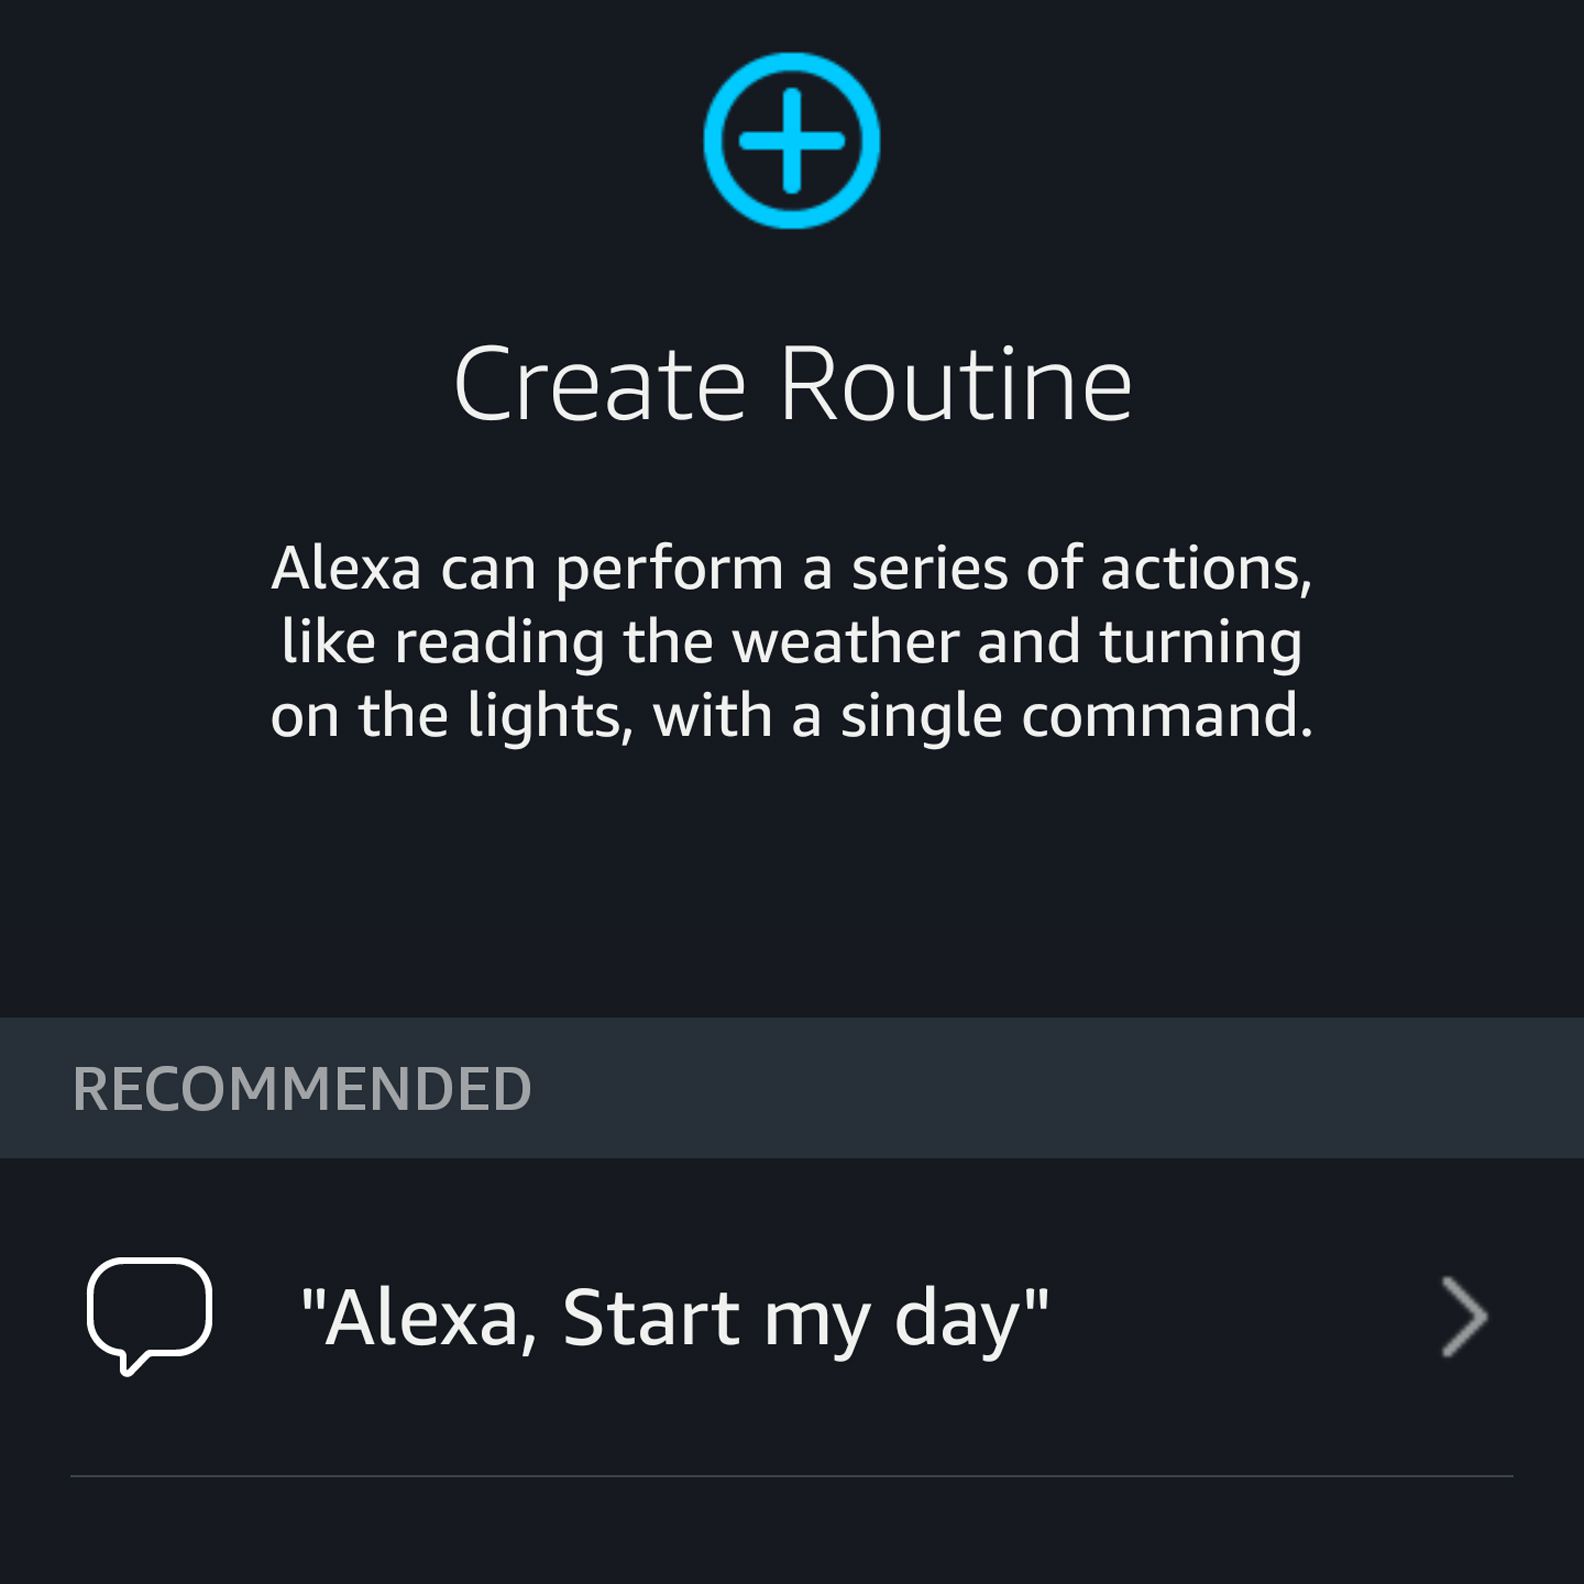 Alexa-app maakt routine